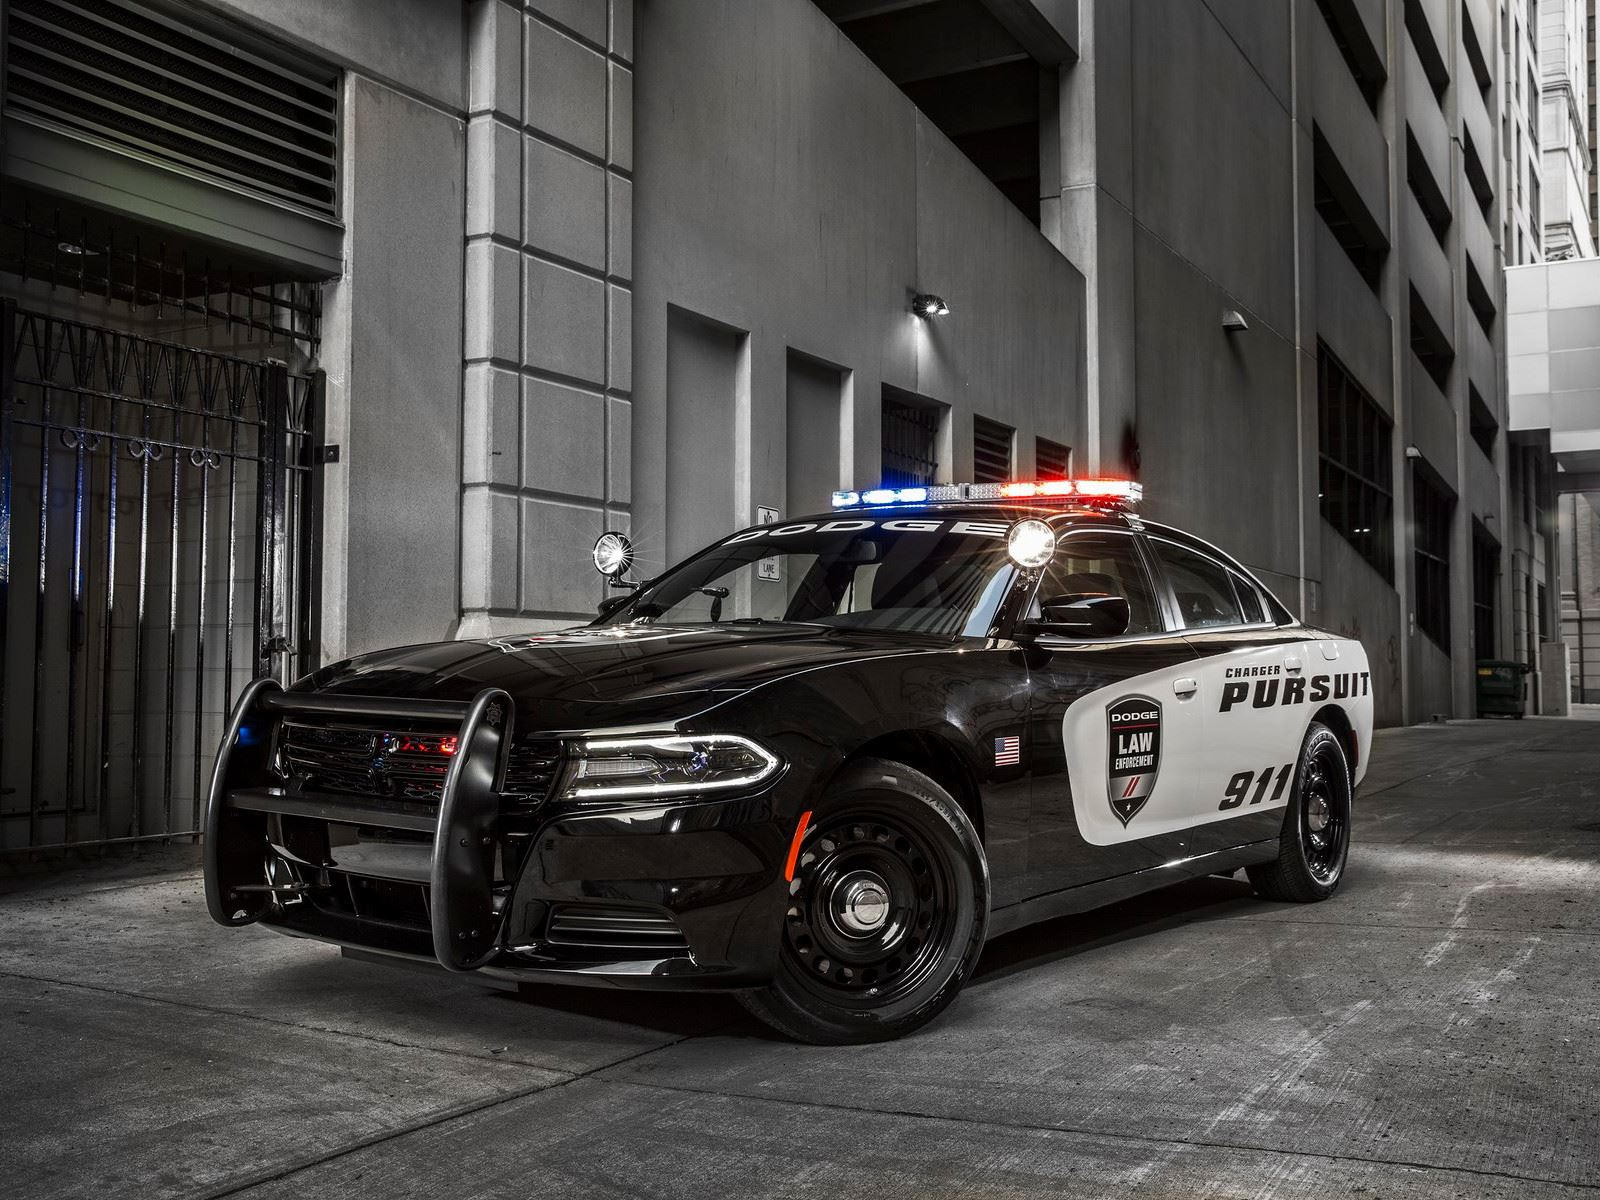 "بالصور" أكثر 10 سيارات شرطة تميزا حول العالم 12